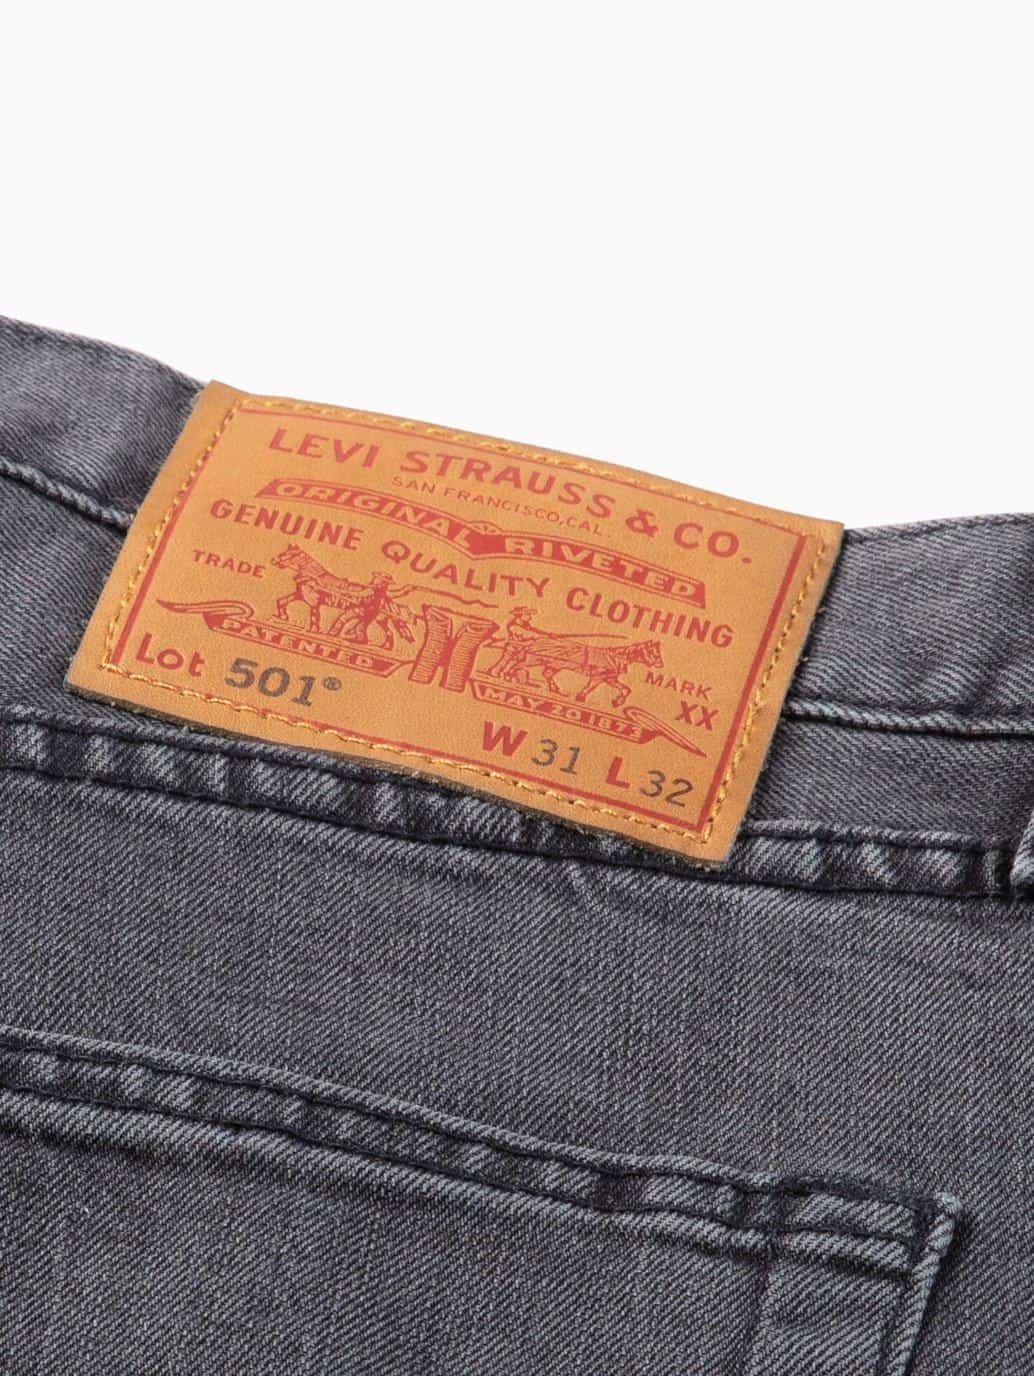 levis malaysia 501 original fit jeans for men parrish tag details